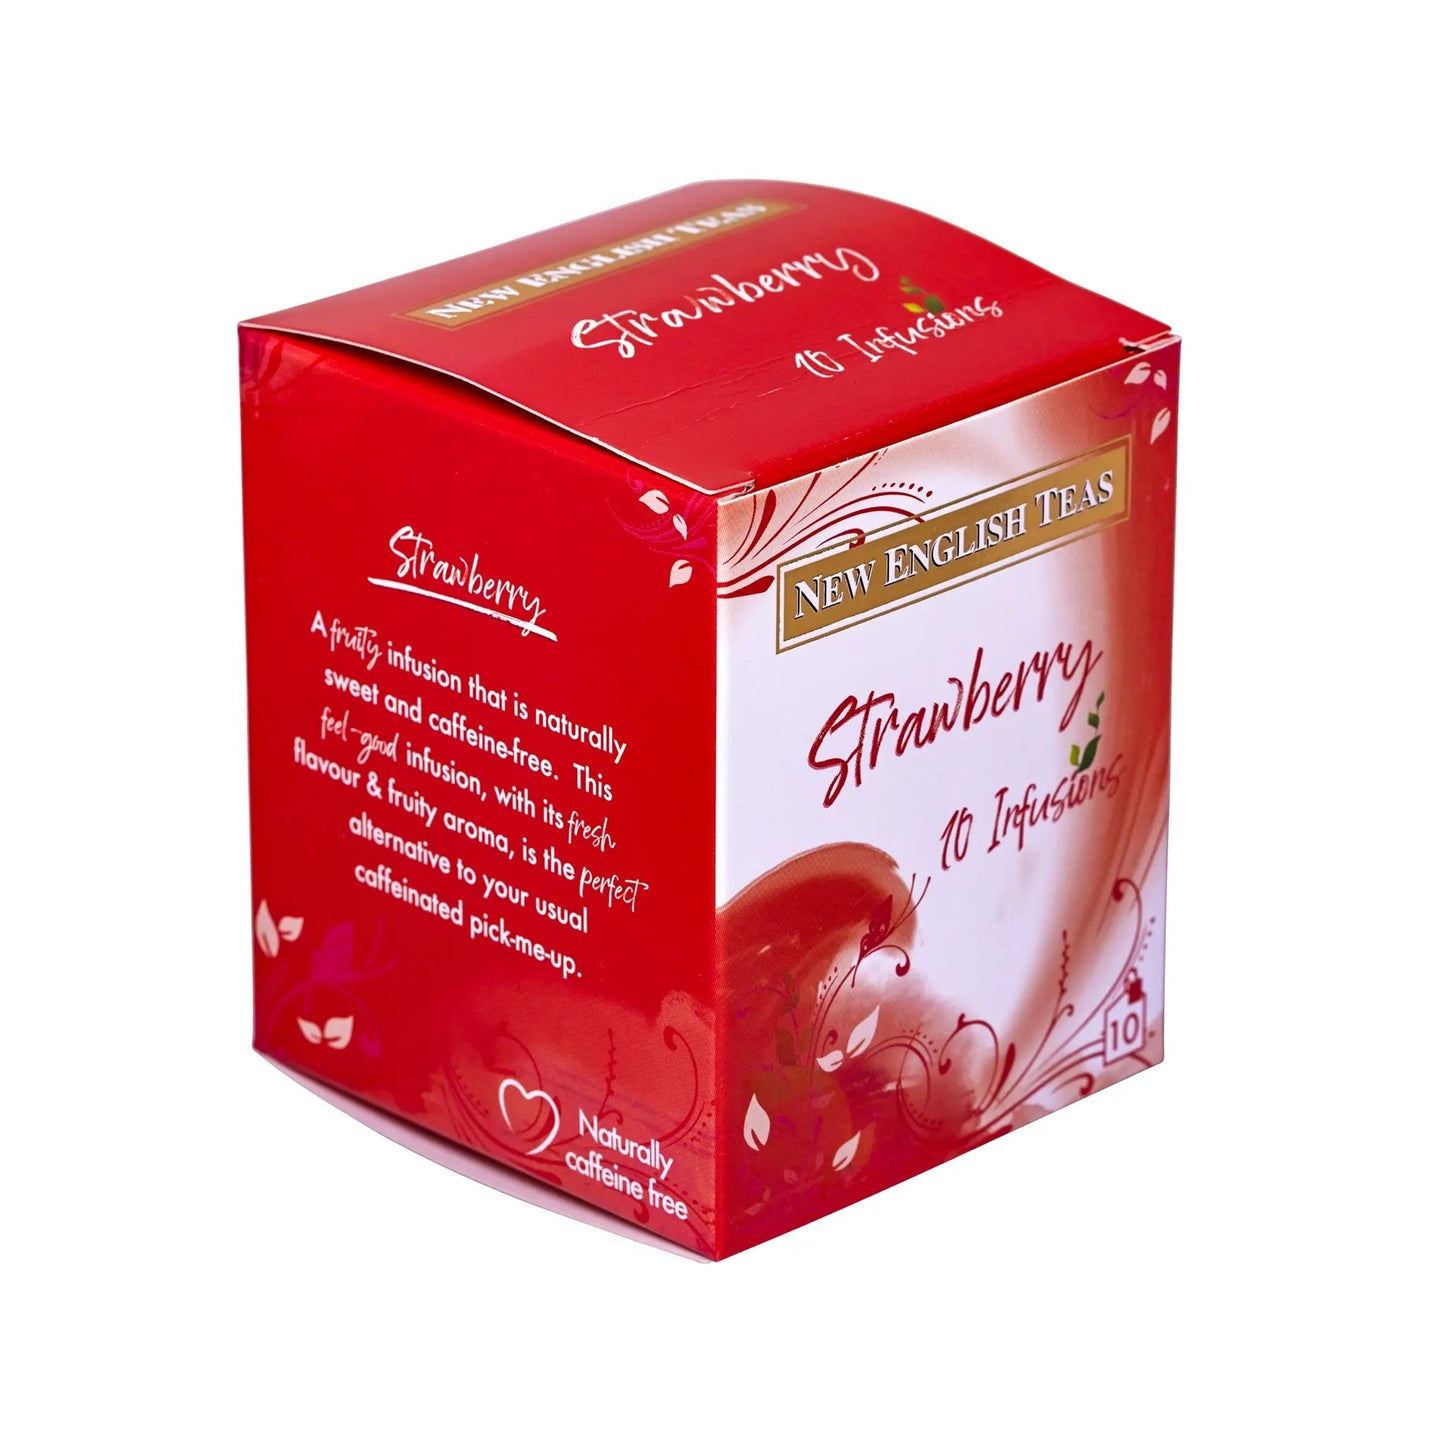 Strawberry Tea 10 Individually Wrapped Teabags Tea Boxes New English Teas 